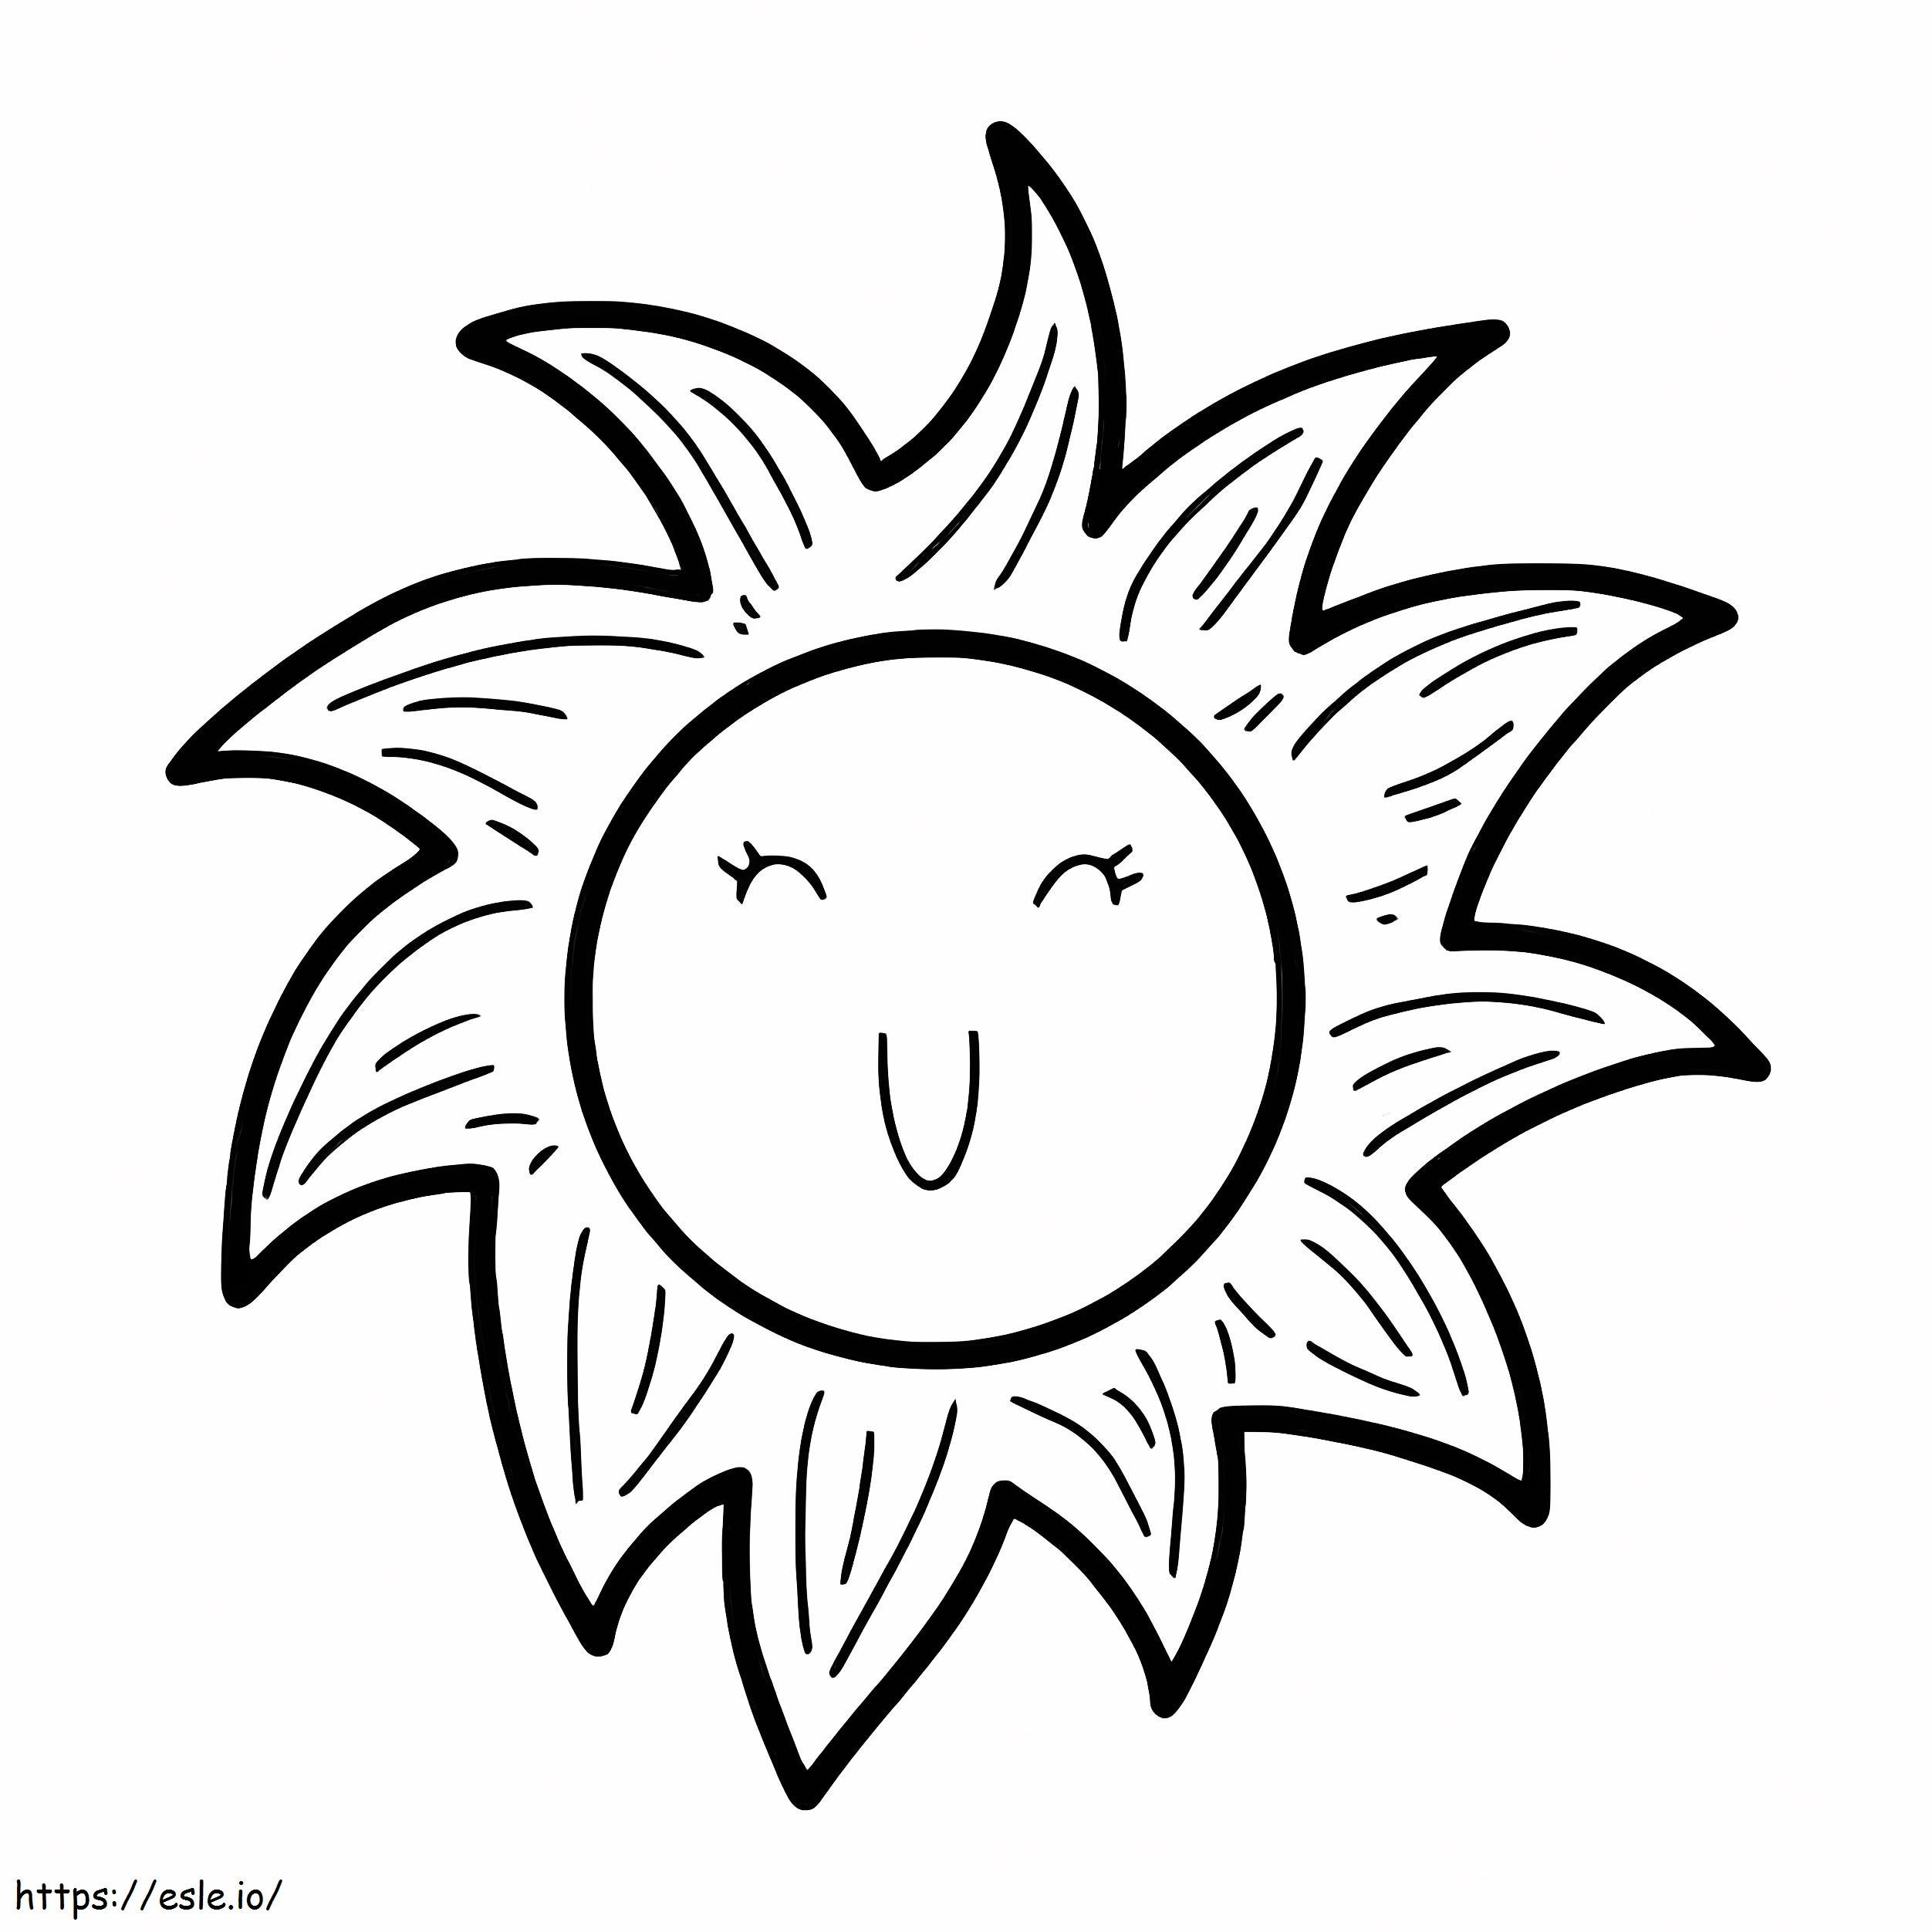 Doodle de sol sorridente para colorir